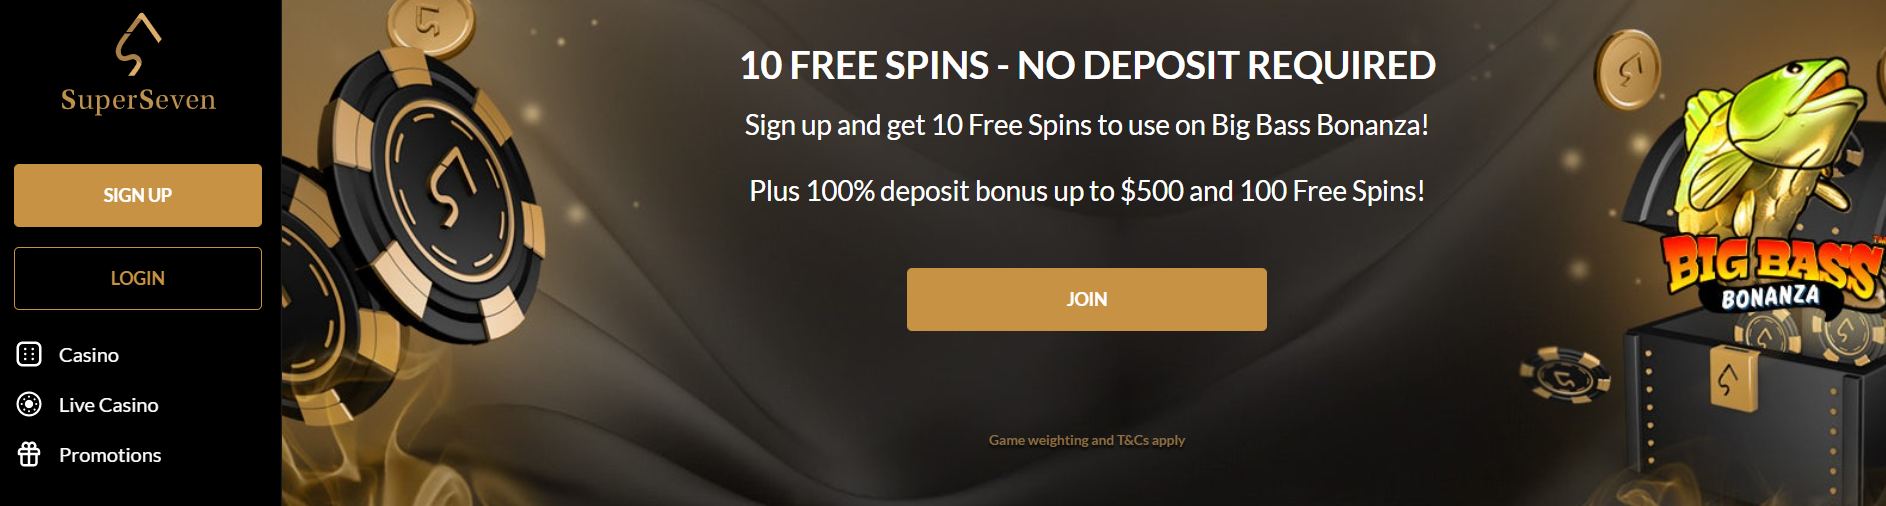 SuperSeven 10 Free Spins - No Deposit